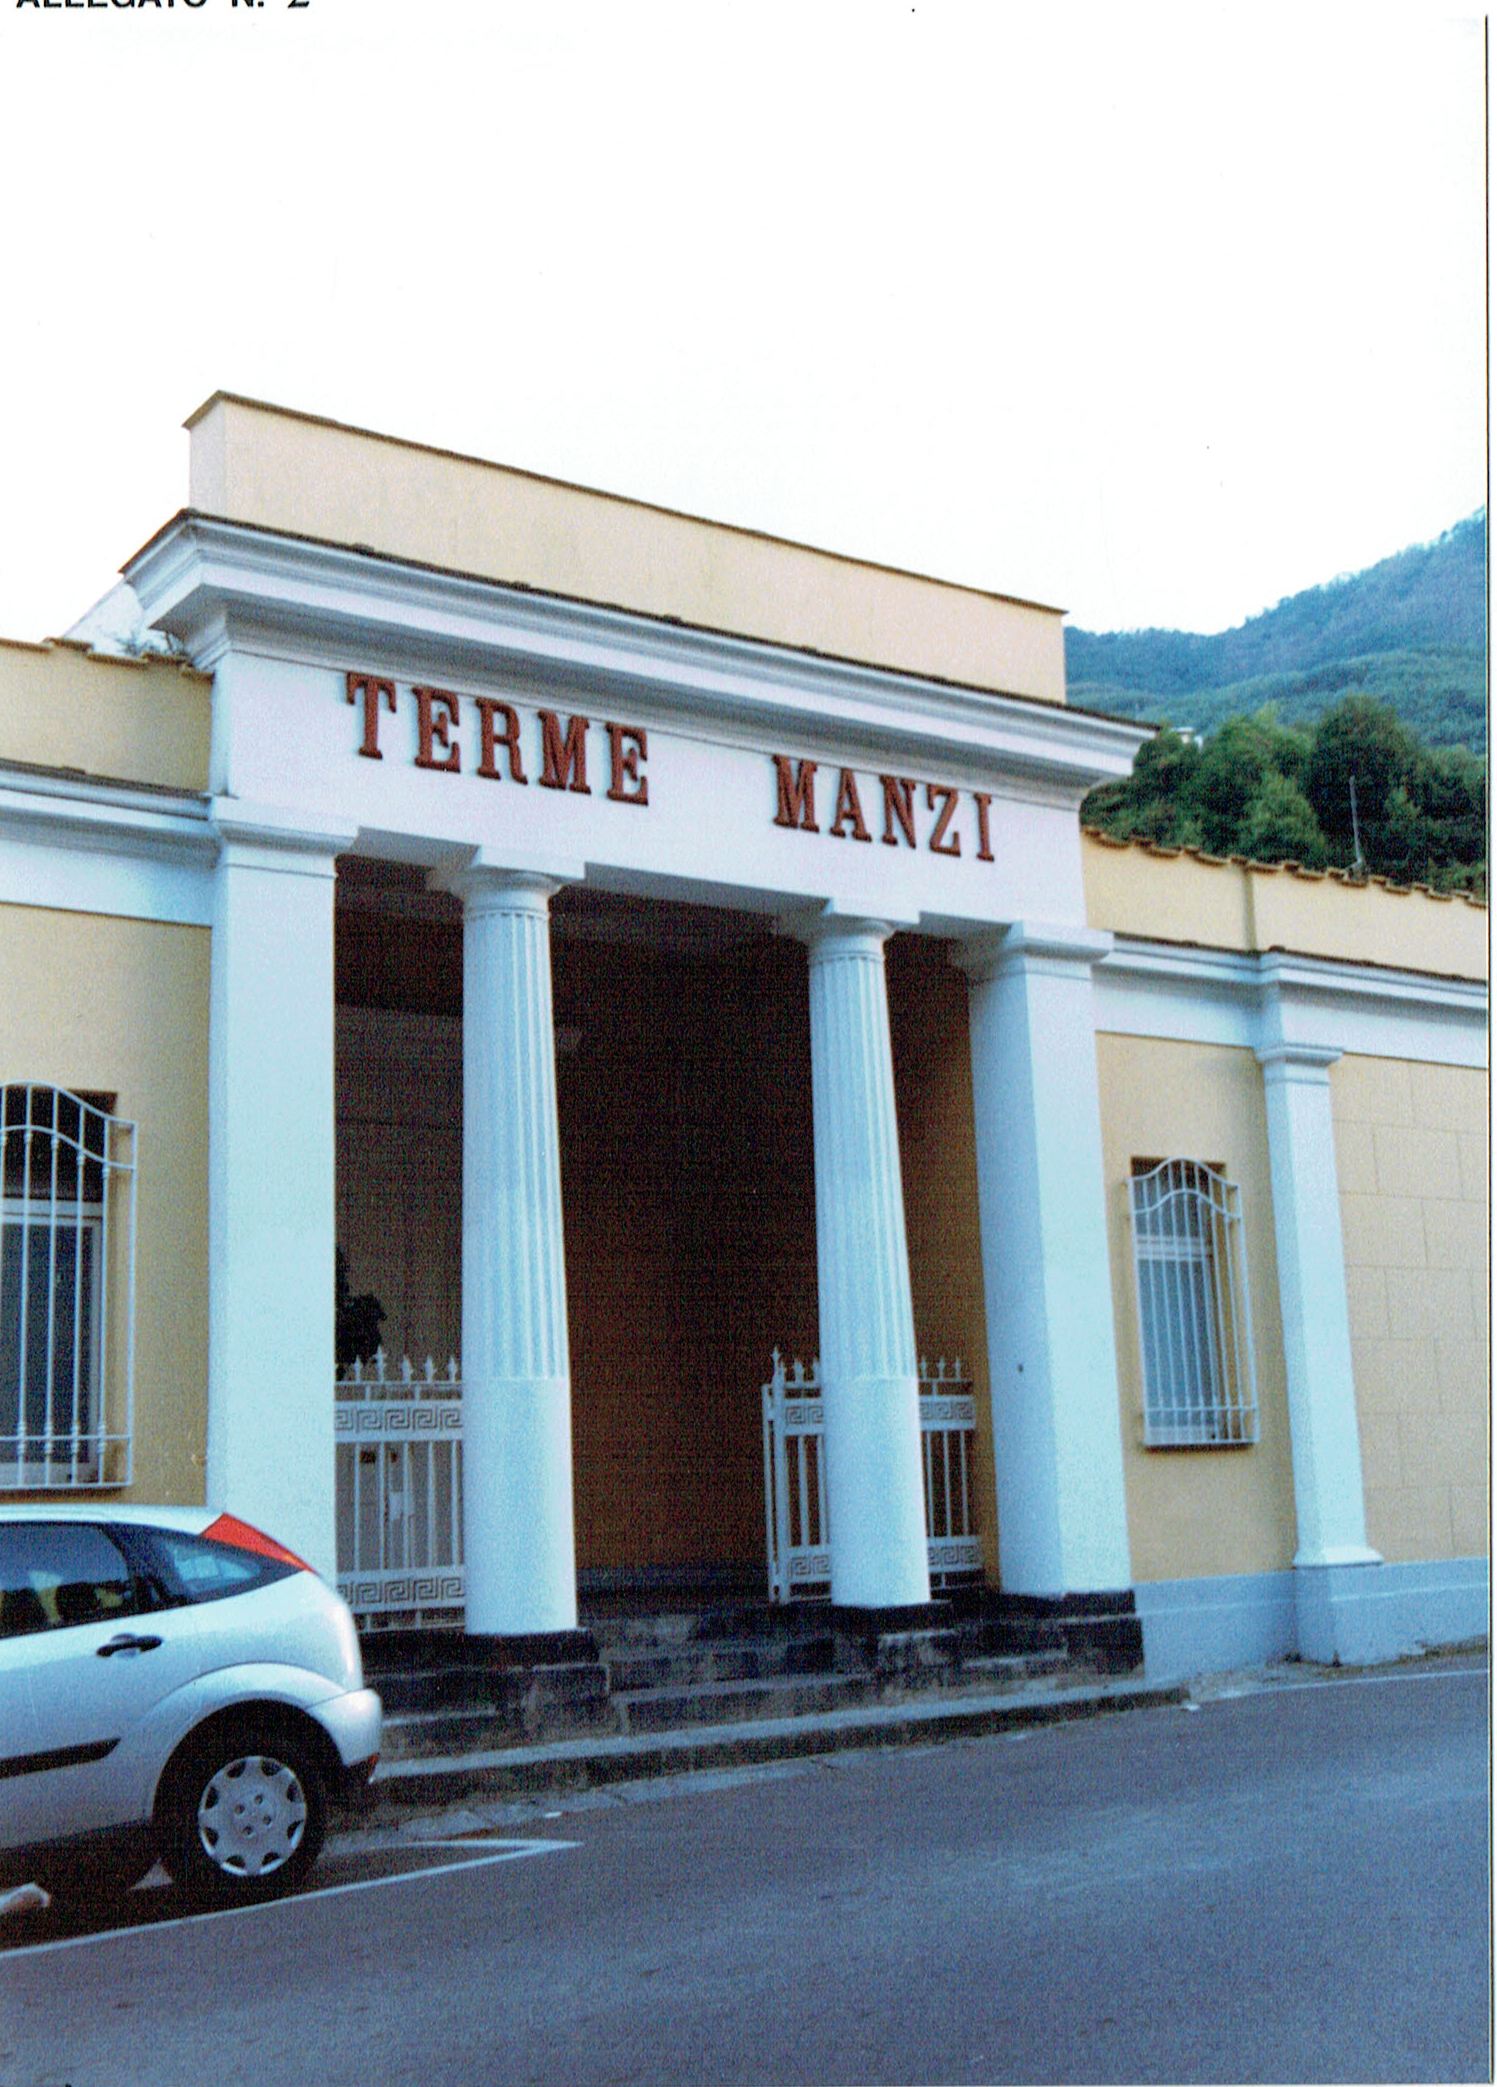 Terme Manzi (terme, private) - Casamicciola Terme (NA)  (XIX; )